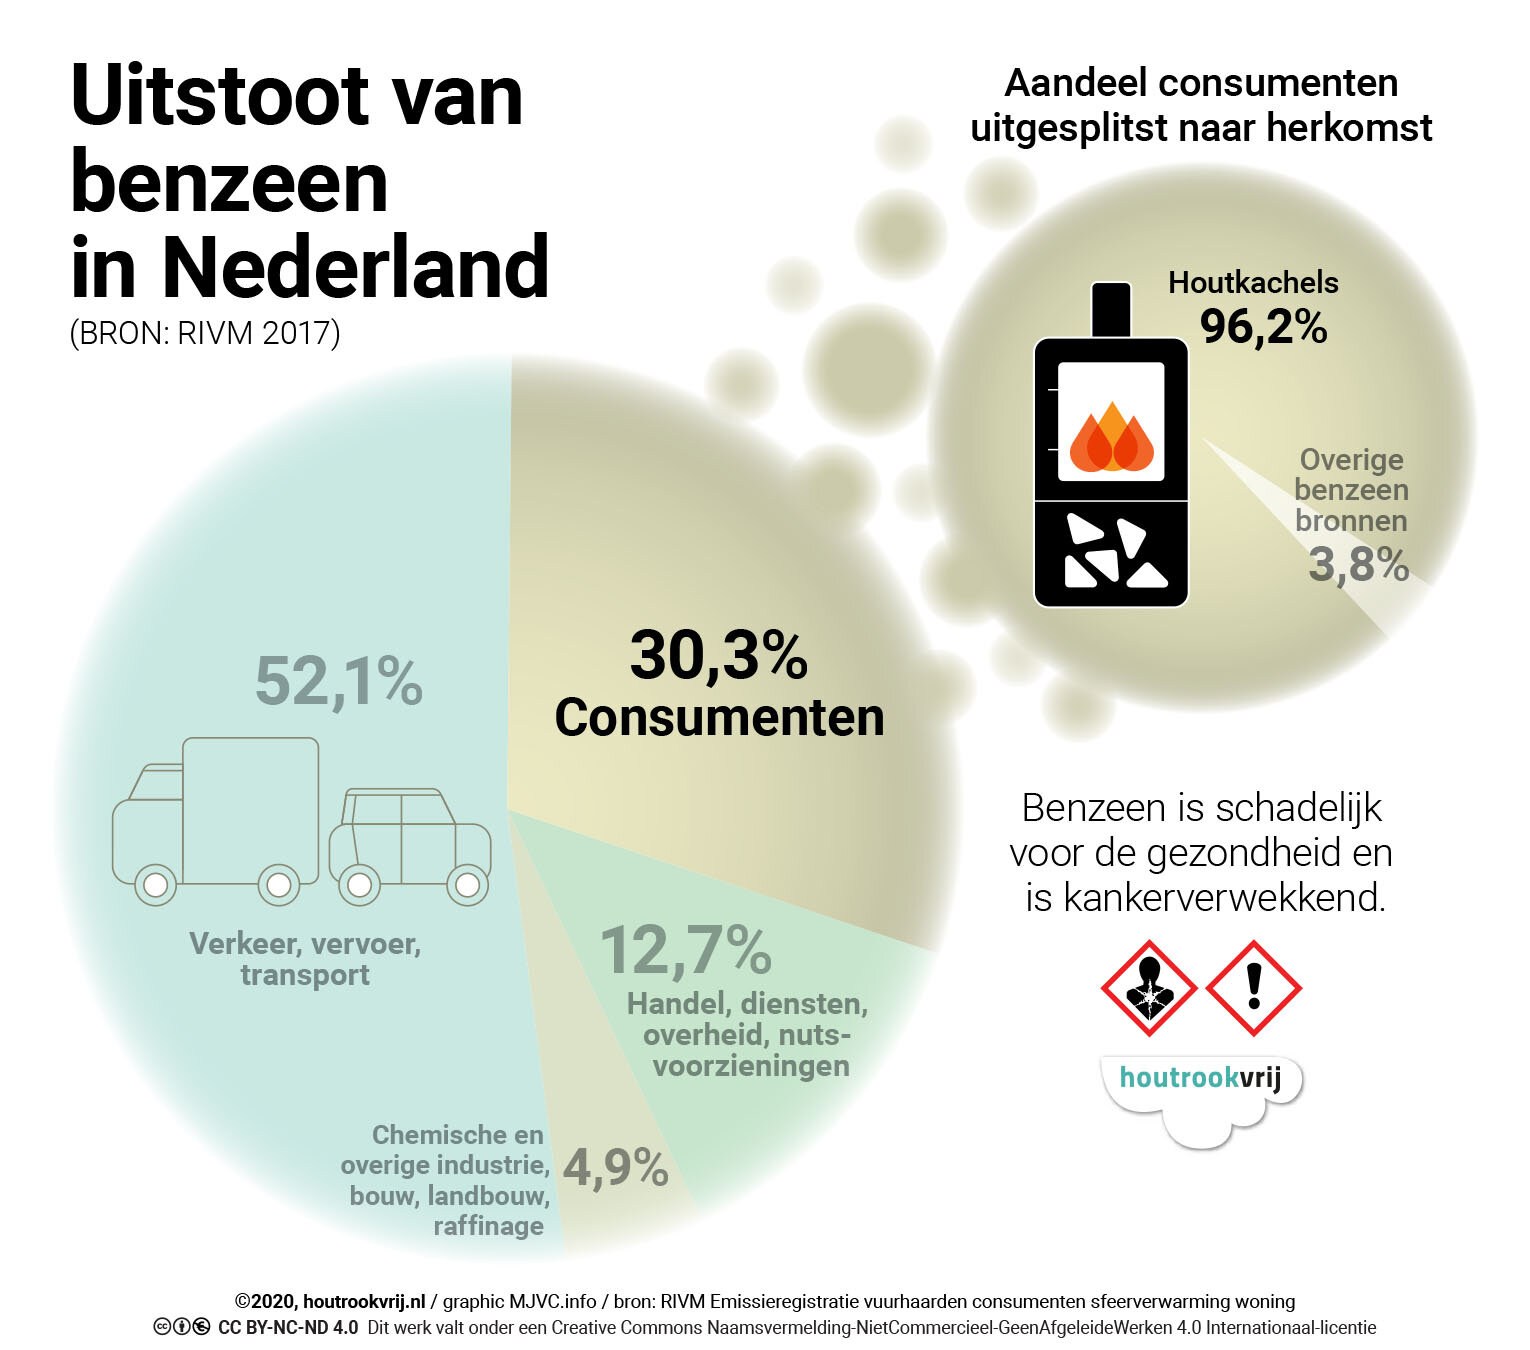 Uitstoot benzeen via houtkachels in Nederland